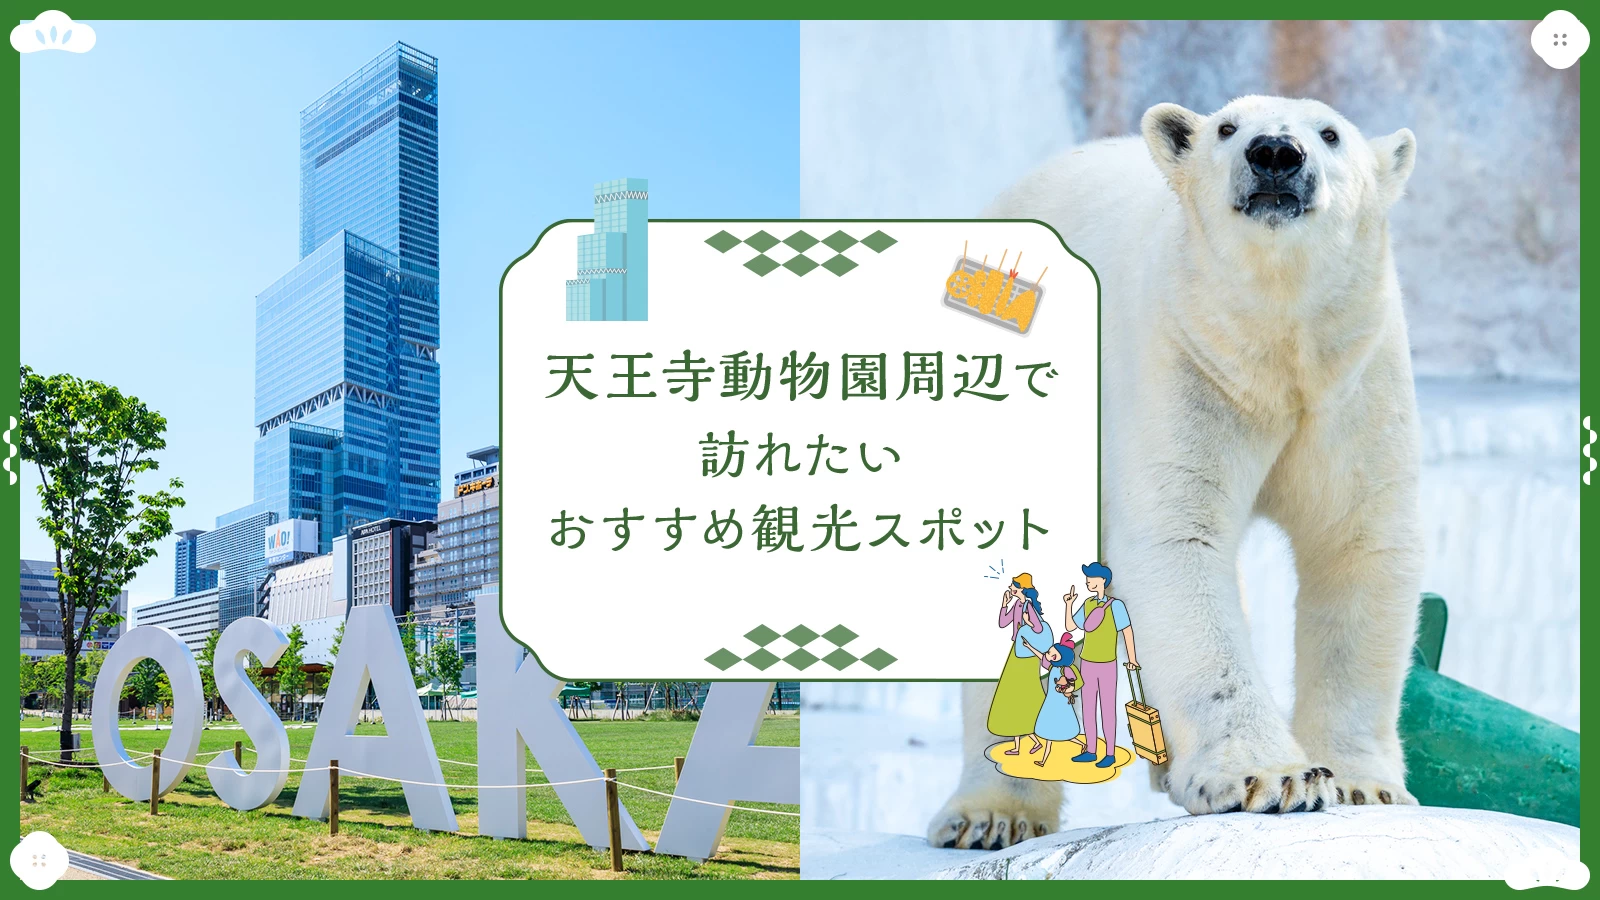 【関西・大阪】天王寺動物園周辺で訪れたいおすすめ観光スポット11選